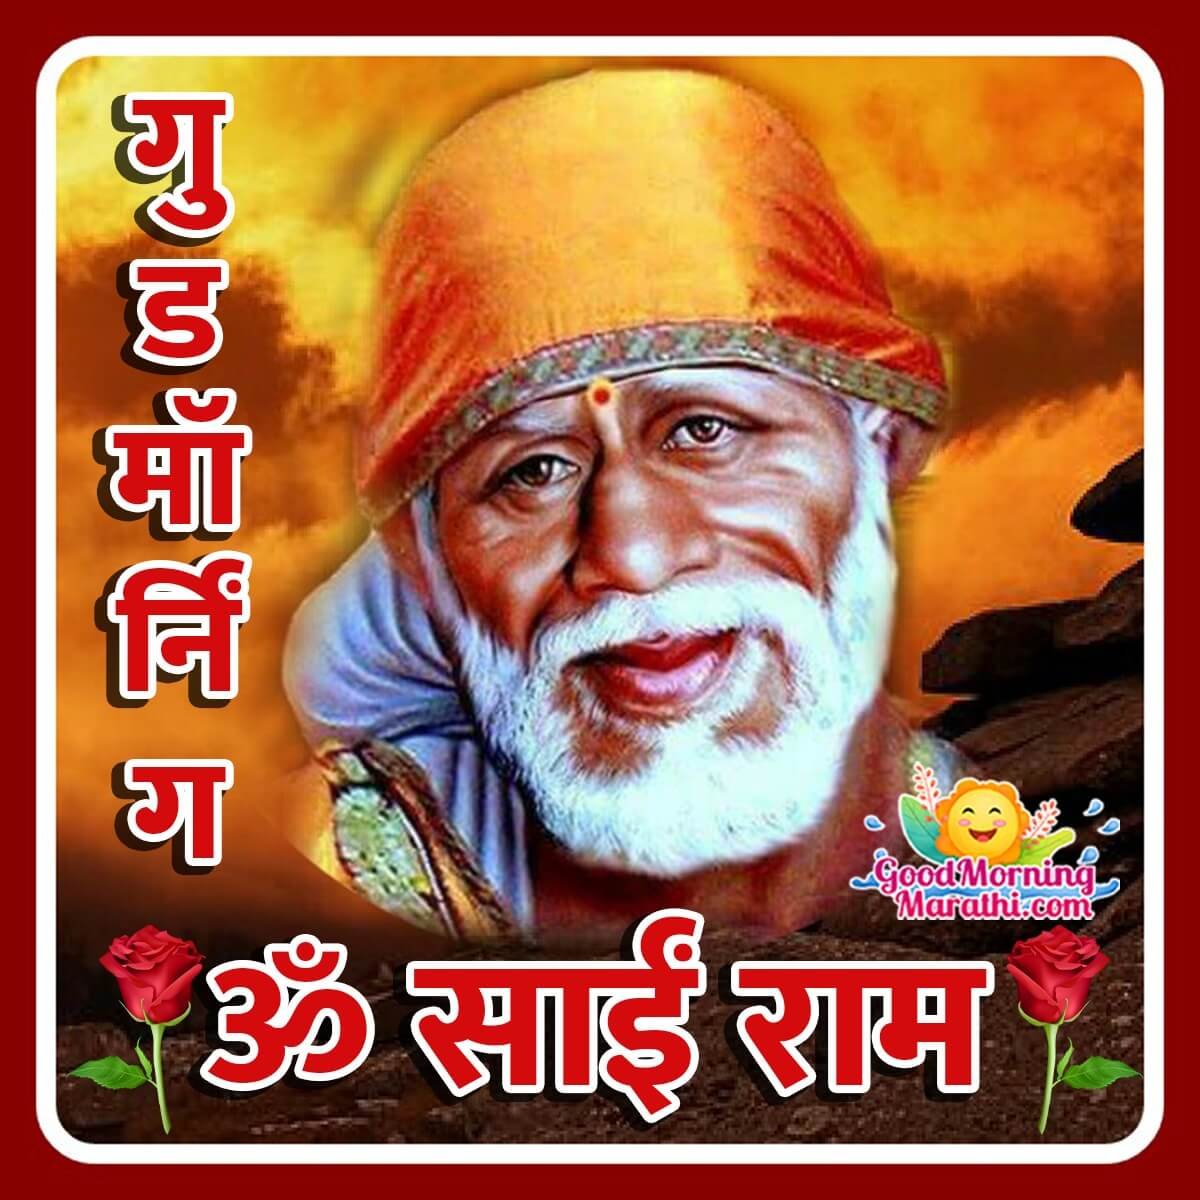 Good Morning Sai Baba Images In Marathi